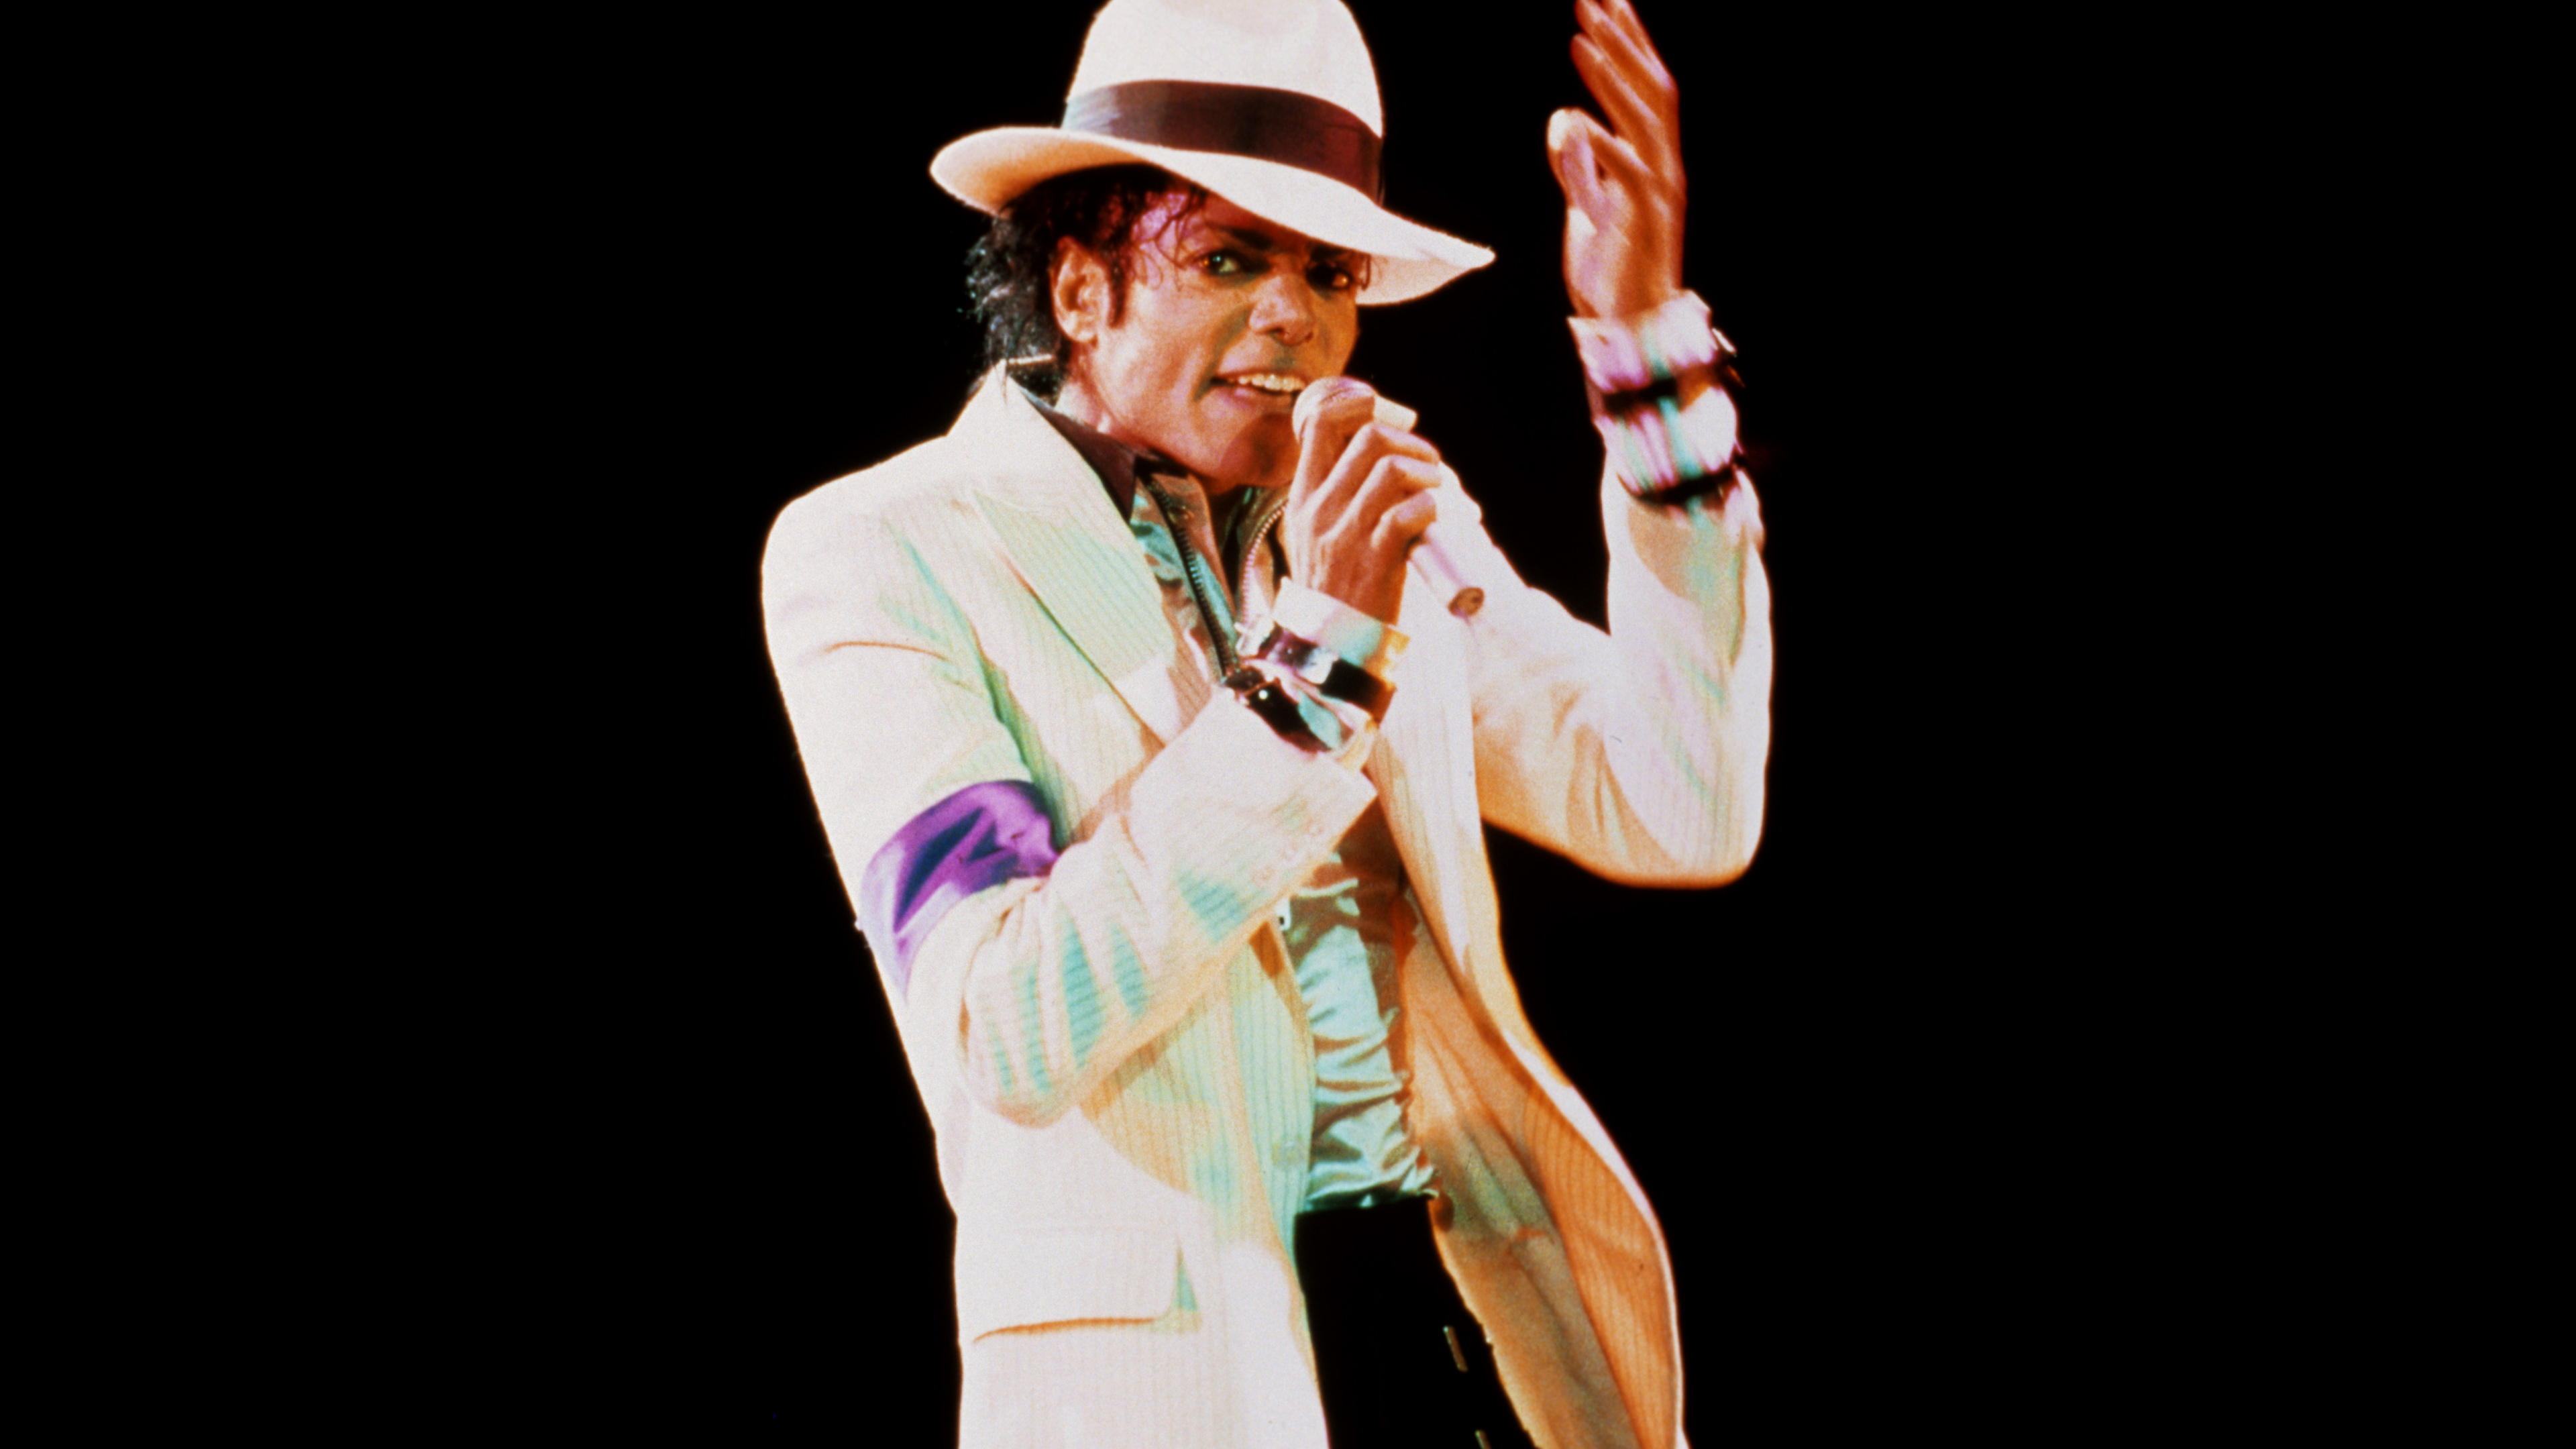 迈克尔*杰克逊, 糟糕, 性能, 音乐艺术家, 歌手 壁纸 3840x2160 允许